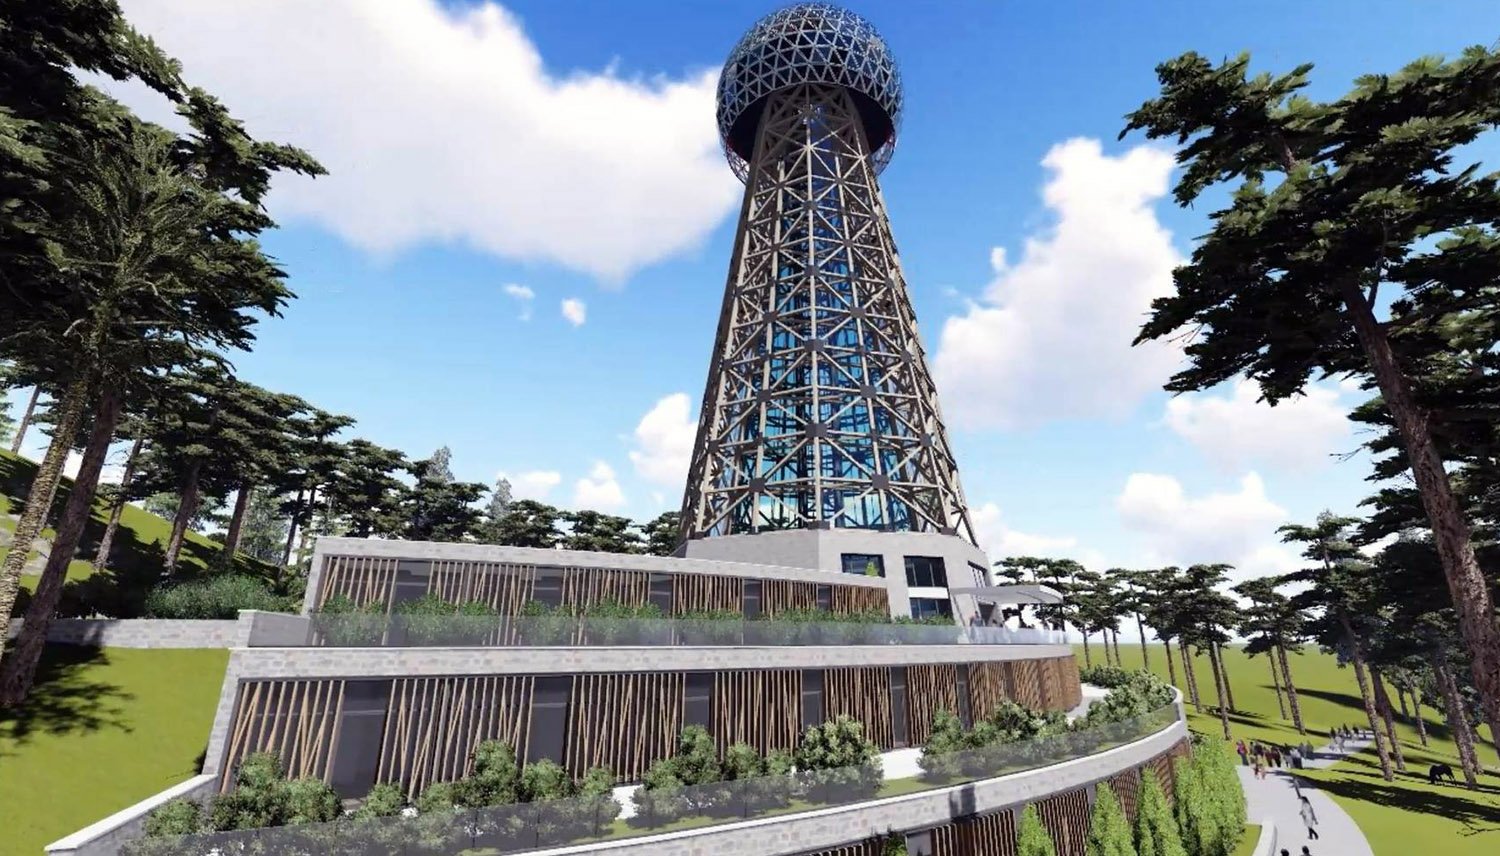 Teslin toranj, međunarodni naučno-istraživački centar biće nova atrakcija na Zlatiboru 1